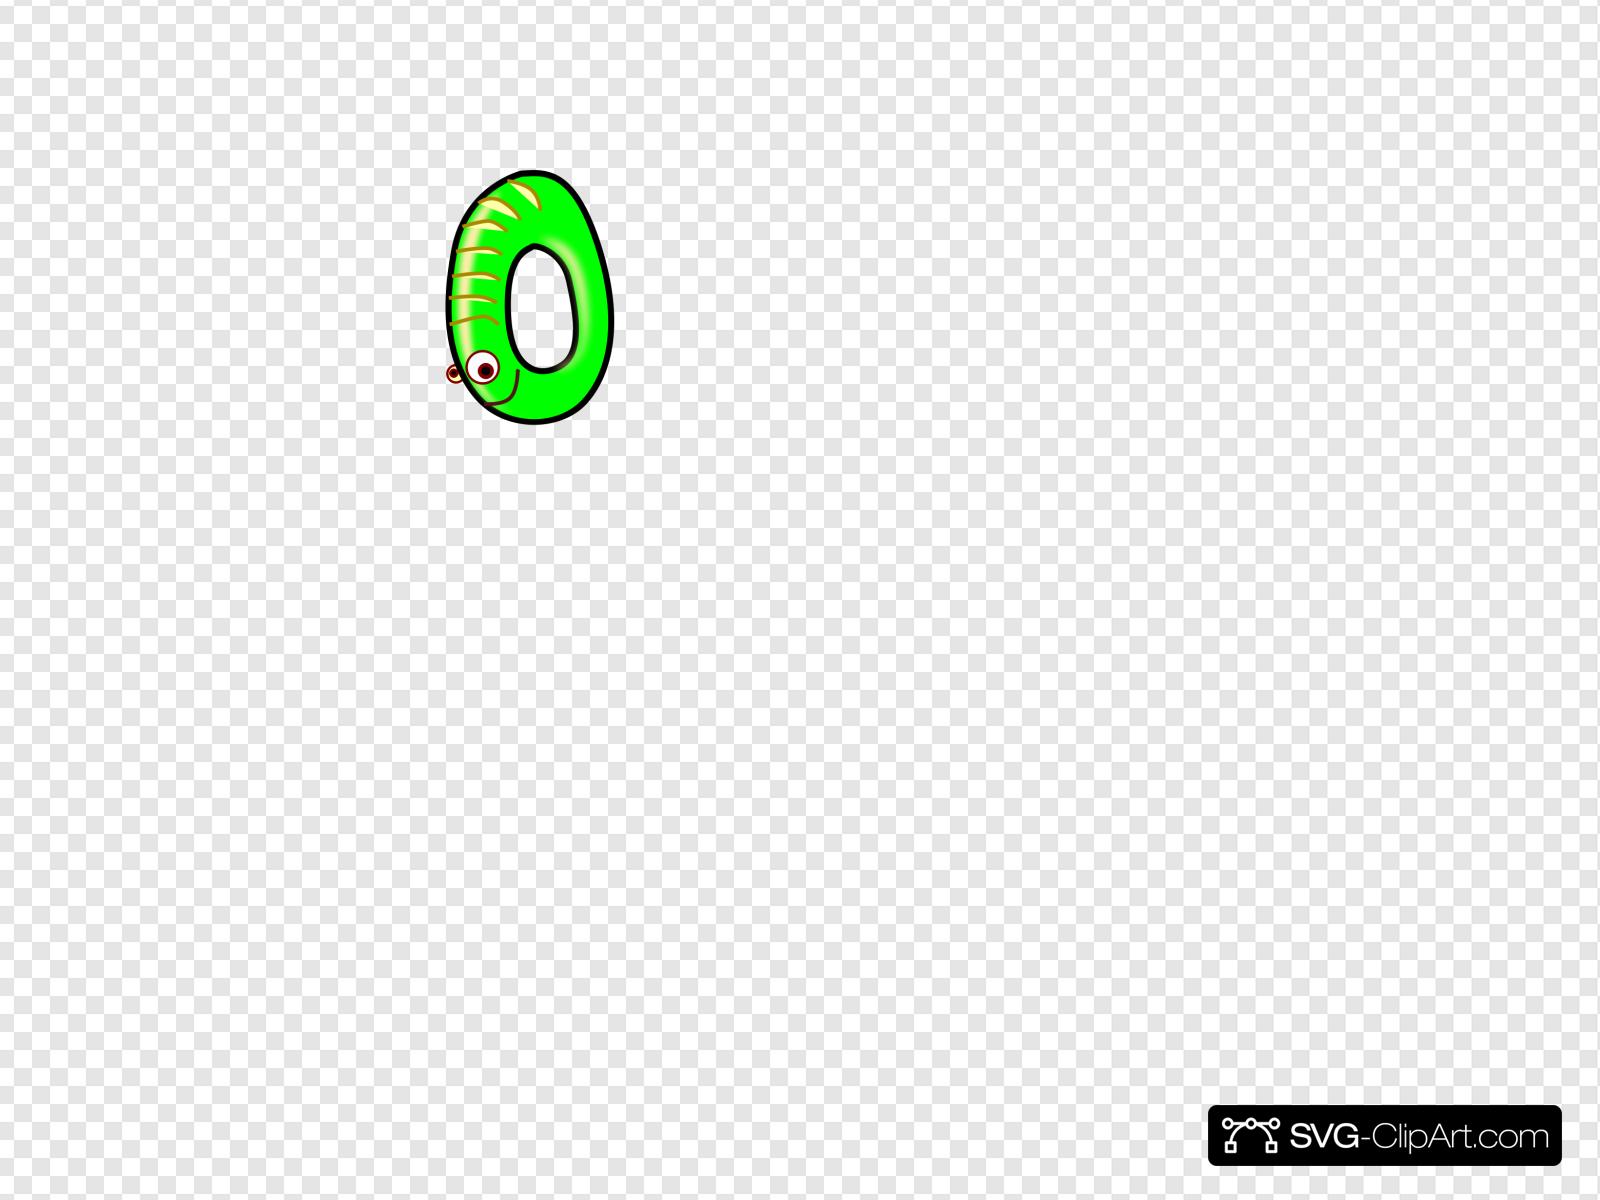 Zero Green Clip art, Icon and SVG